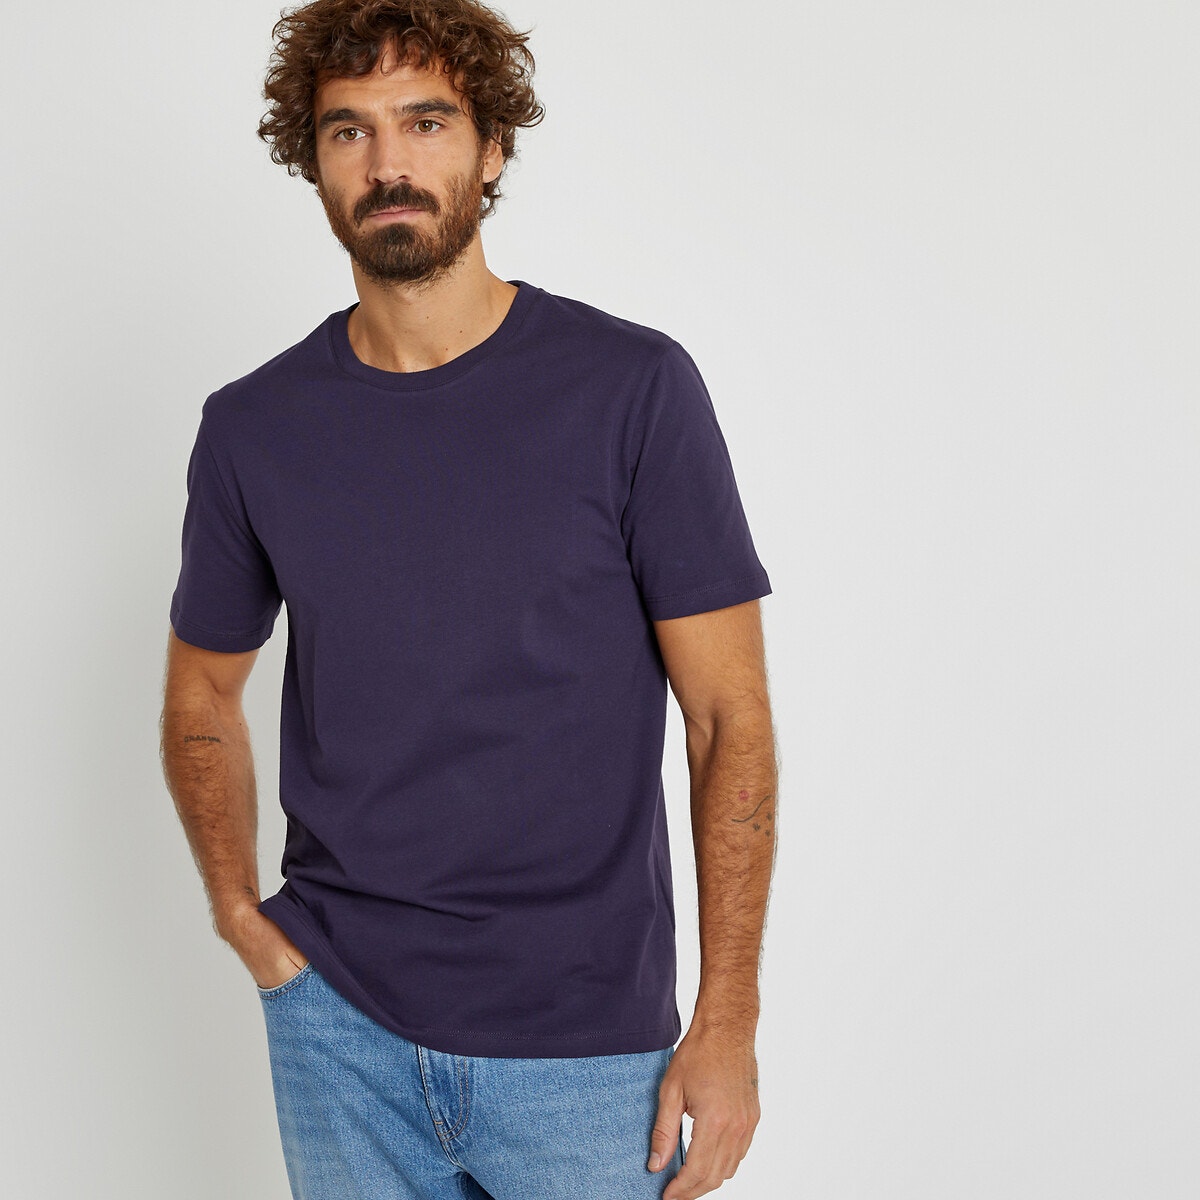 Μόδα > Ανδρικά > Ρούχα > T-shirt > Κοντά μανίκια Κοντομάνικο T-shirt από οργανικό βαμβάκι